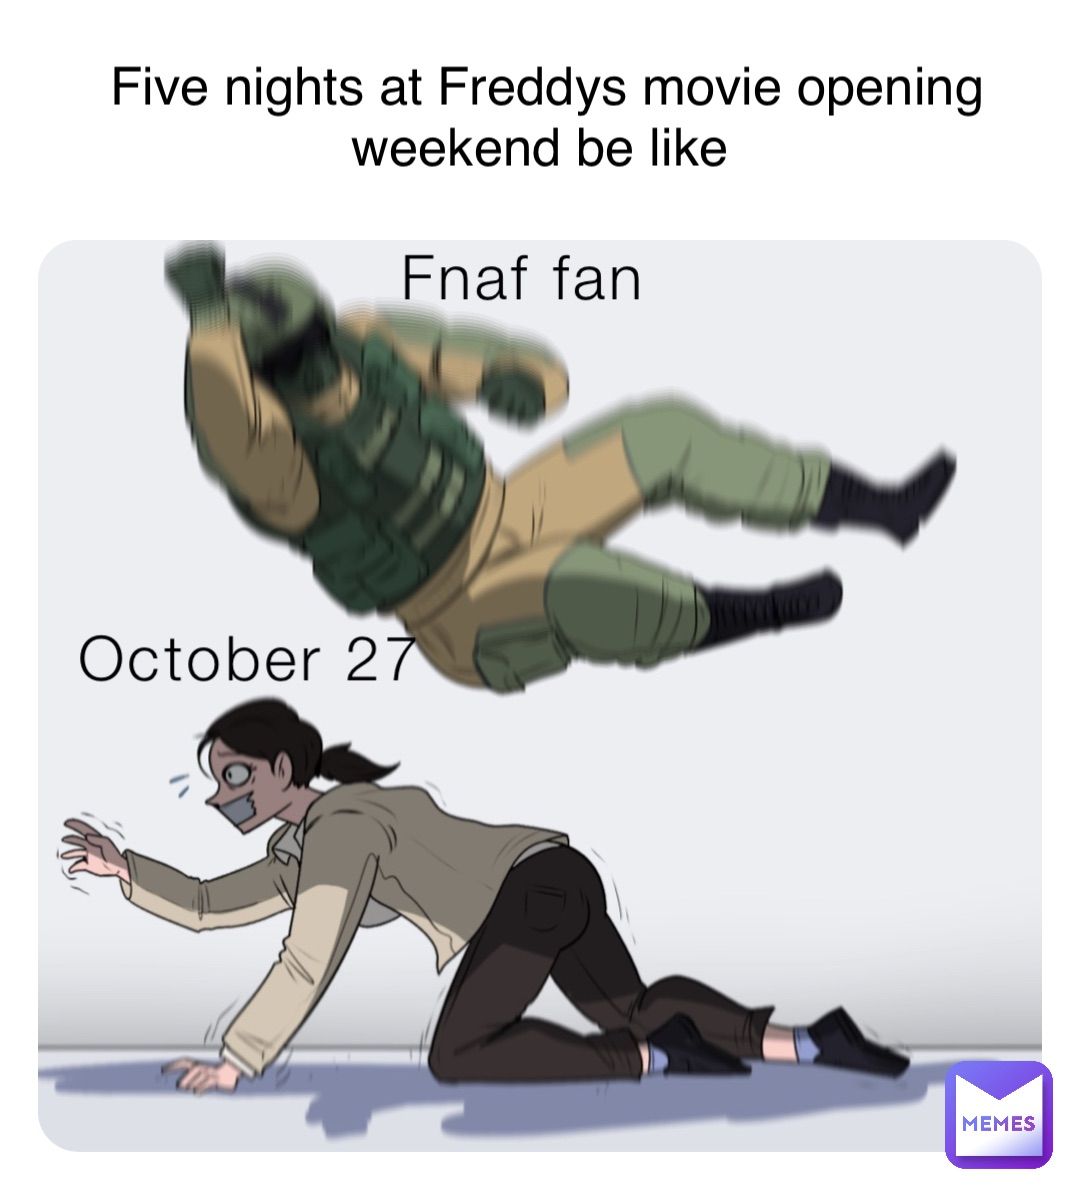 Five nights at Freddys movie opening
weekend be like
Fnaf fan
October 27
MEMES